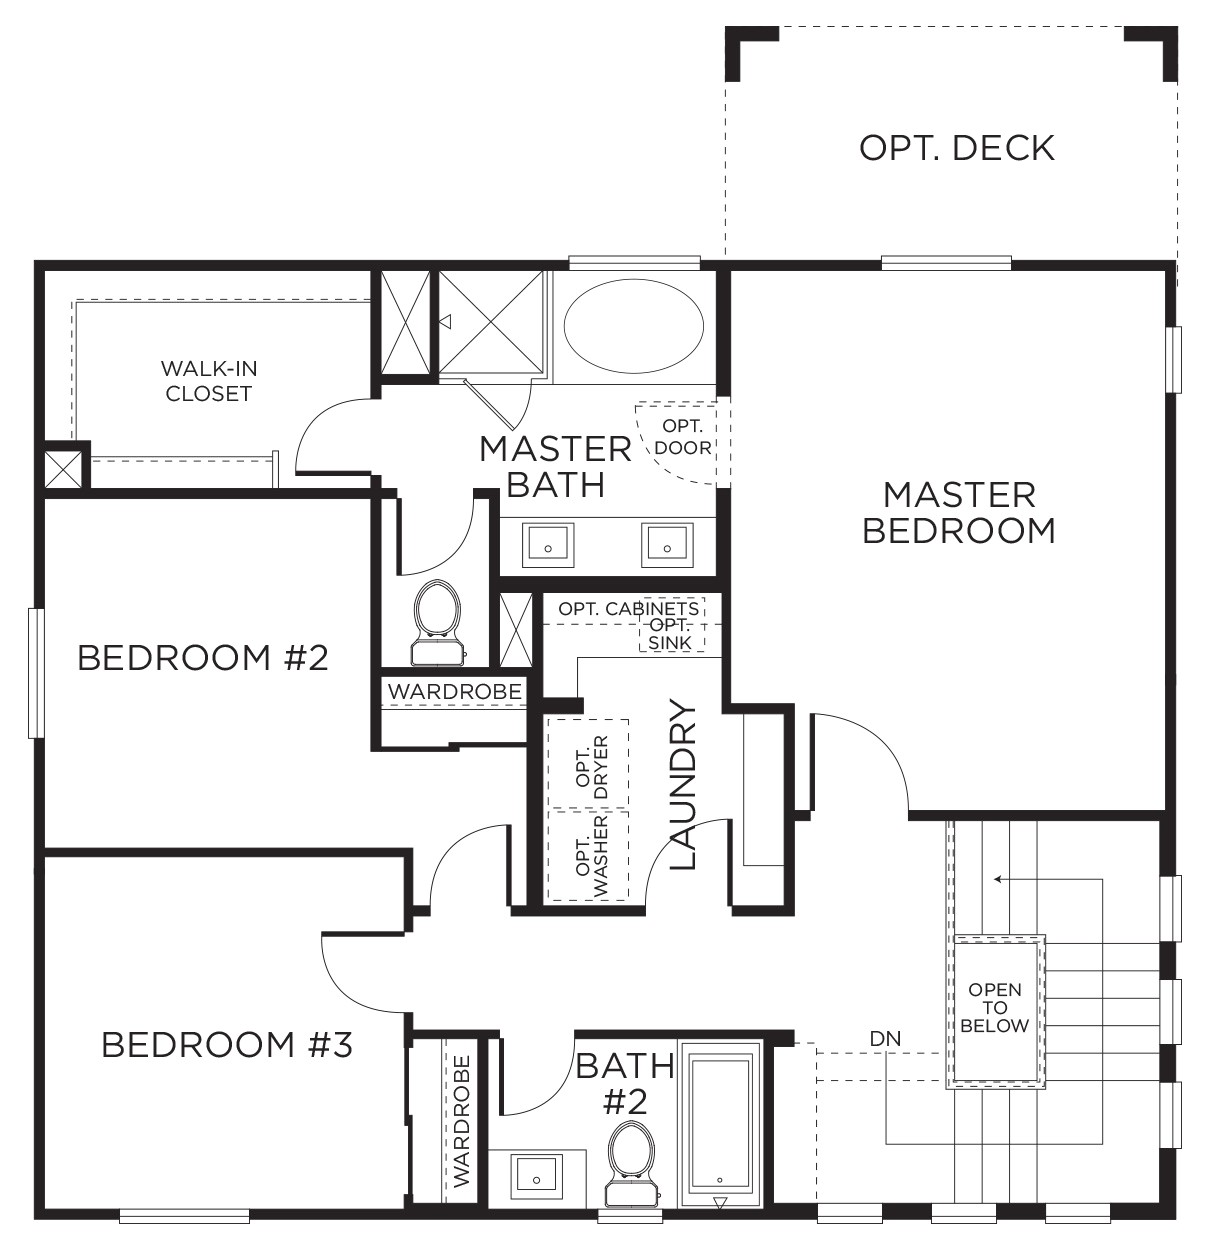 3 bedroom 2 bath floor plans